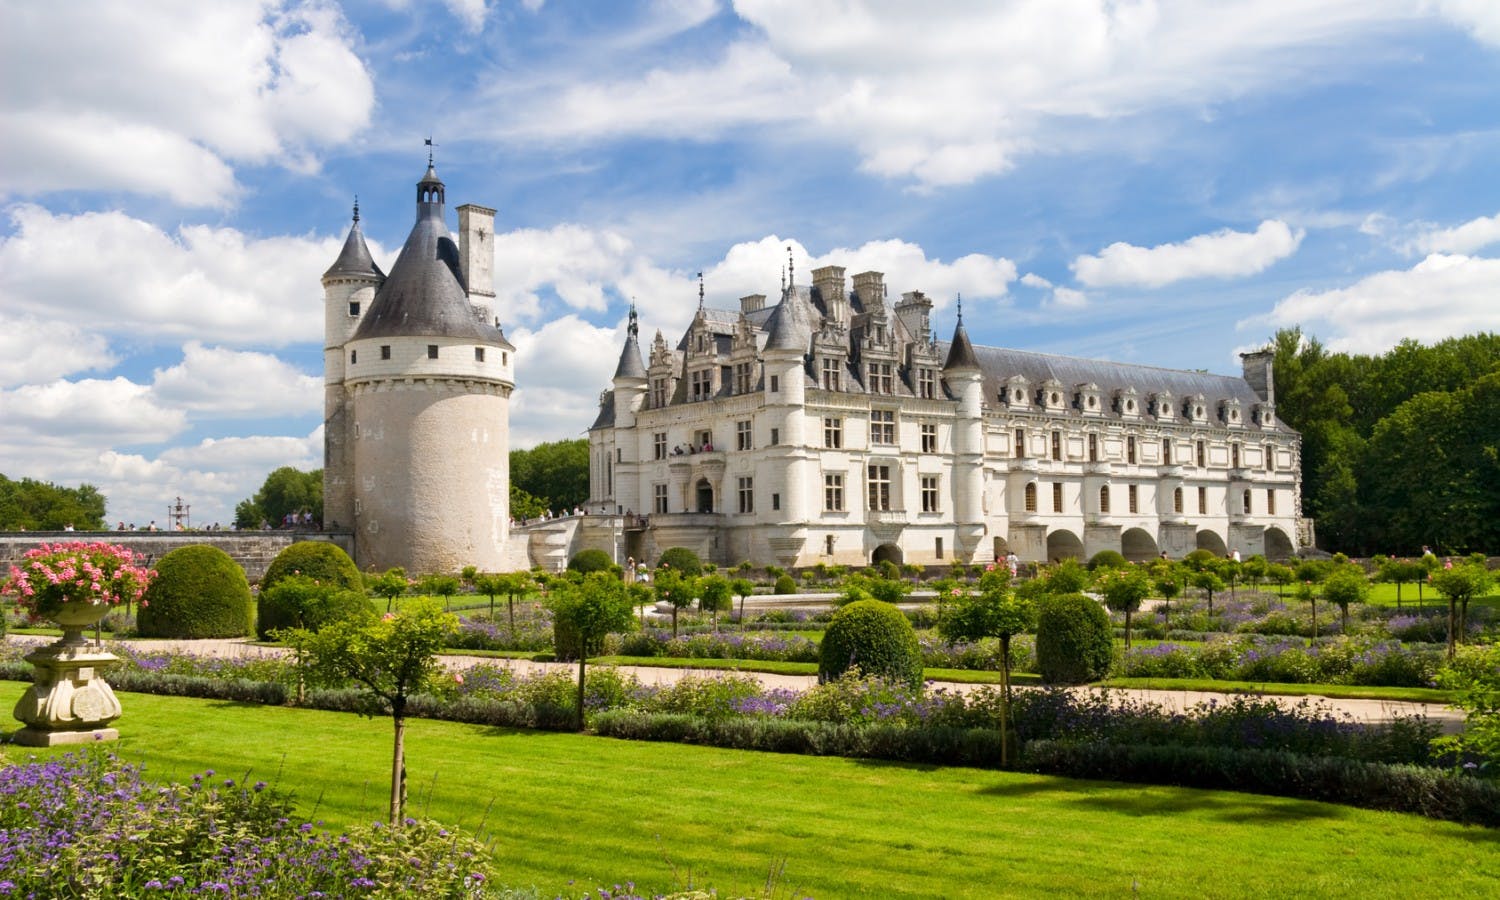 Dagtrip naar Chambord, Chenonceau en Amboise vanuit Parijs